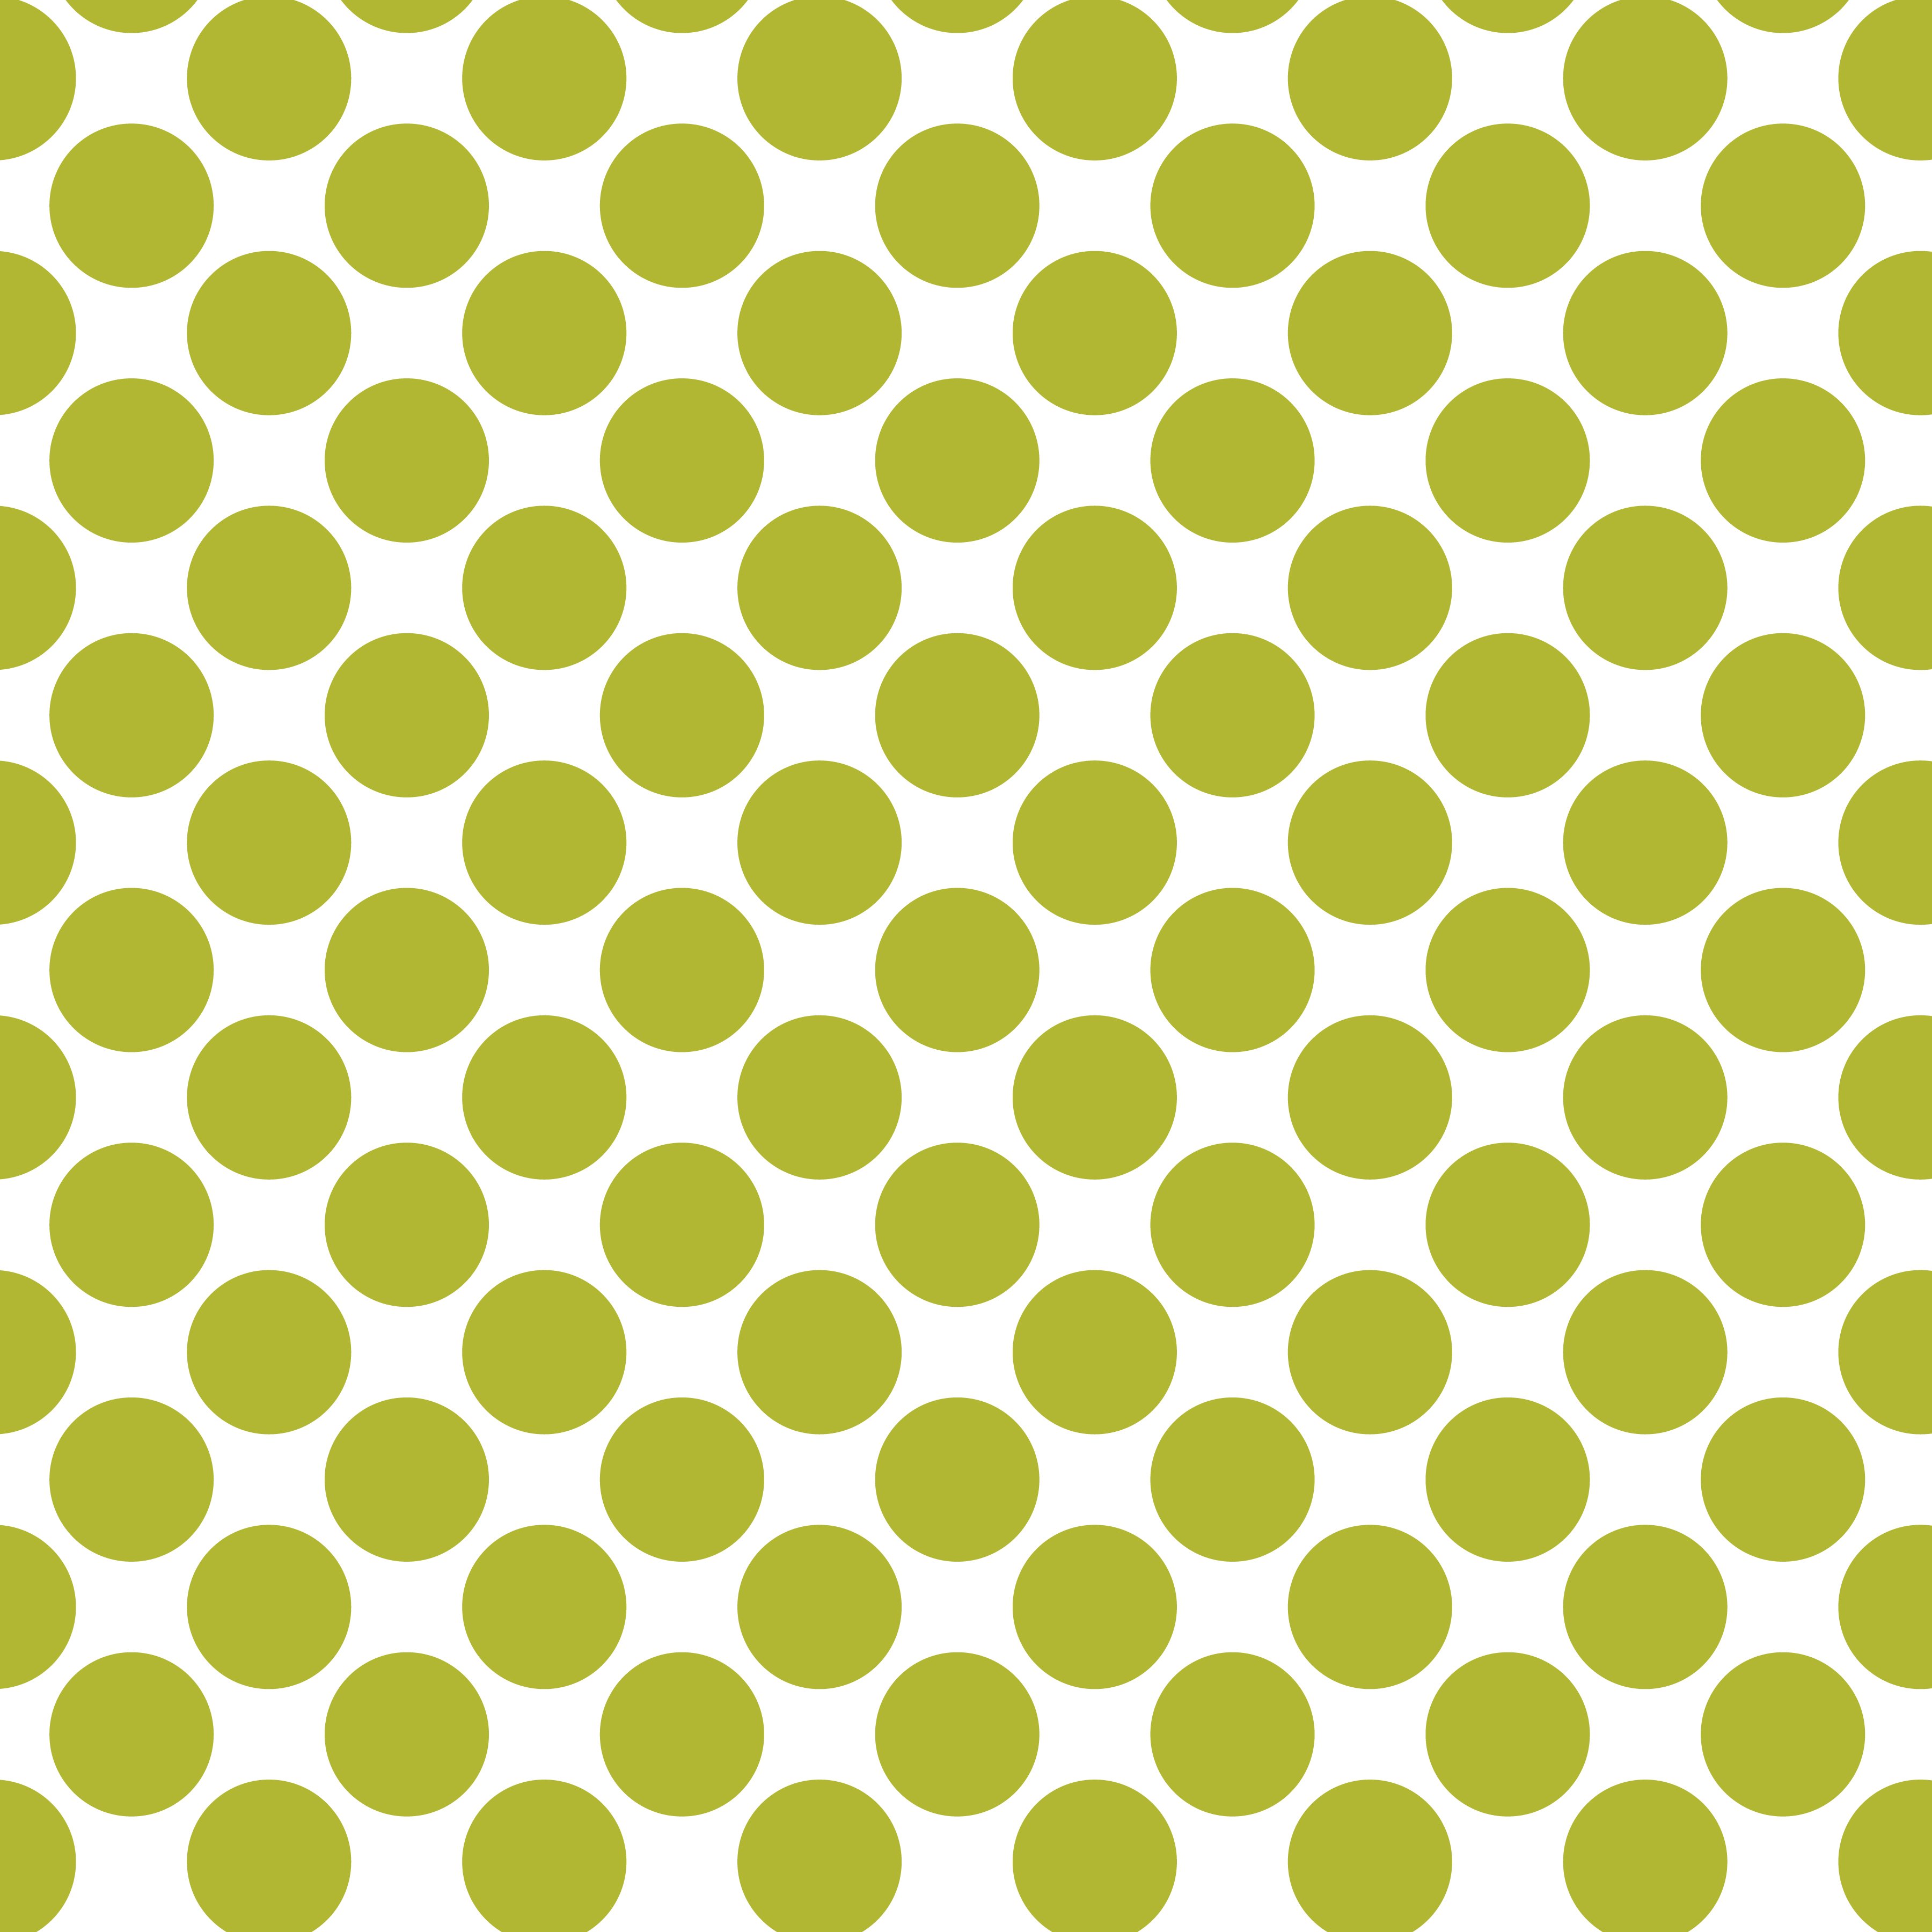 Polka Dot 1 cm Beyaz - Yağ Yeşili Puantiye Dekoratif Baskı Kumaş